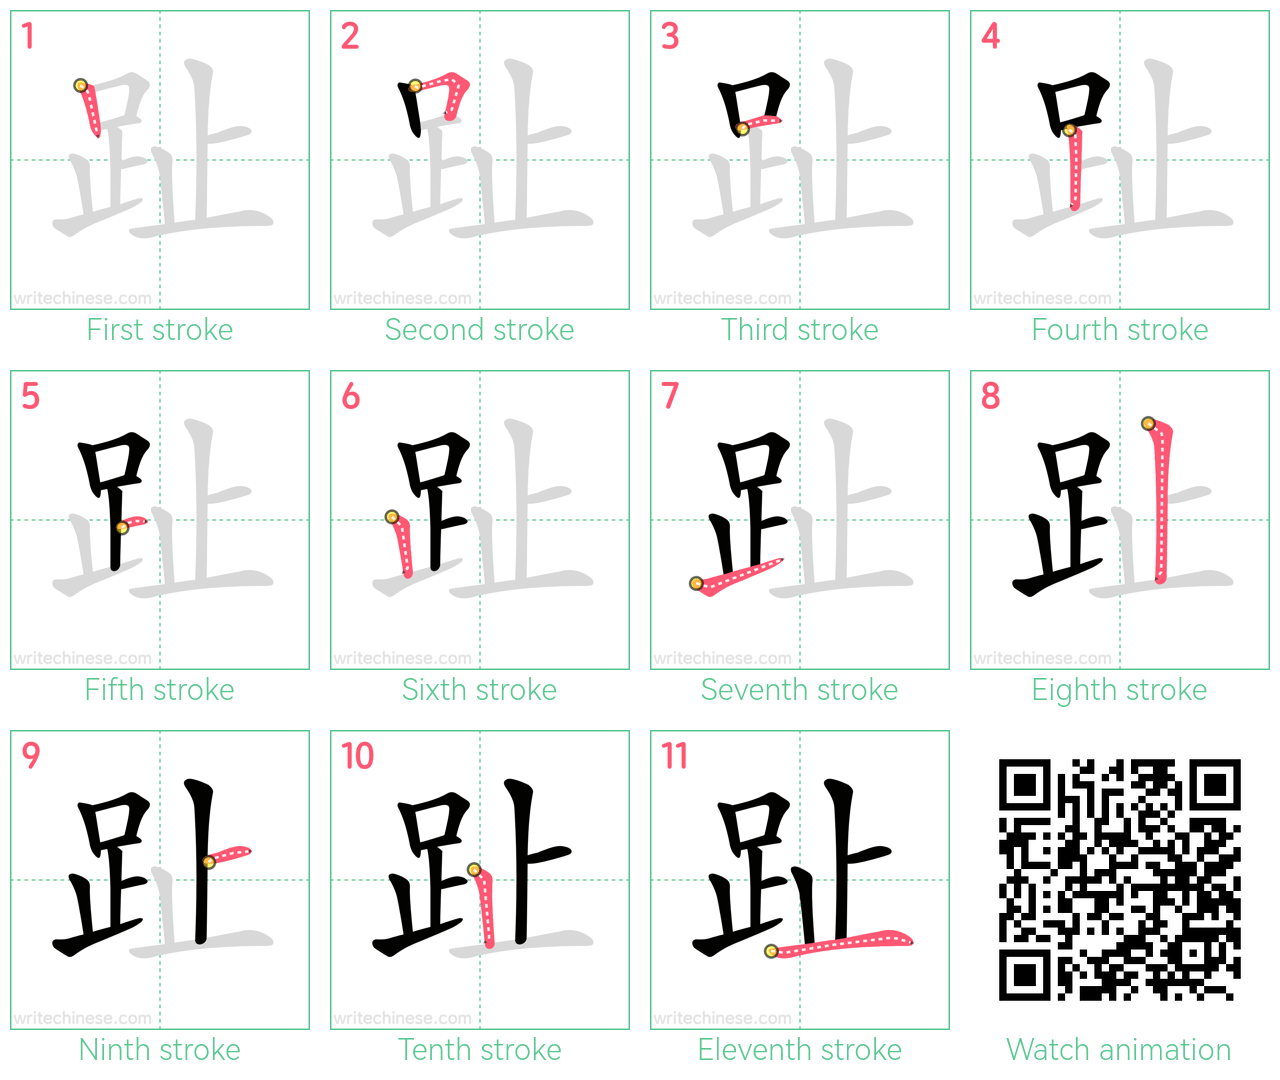 趾 step-by-step stroke order diagrams